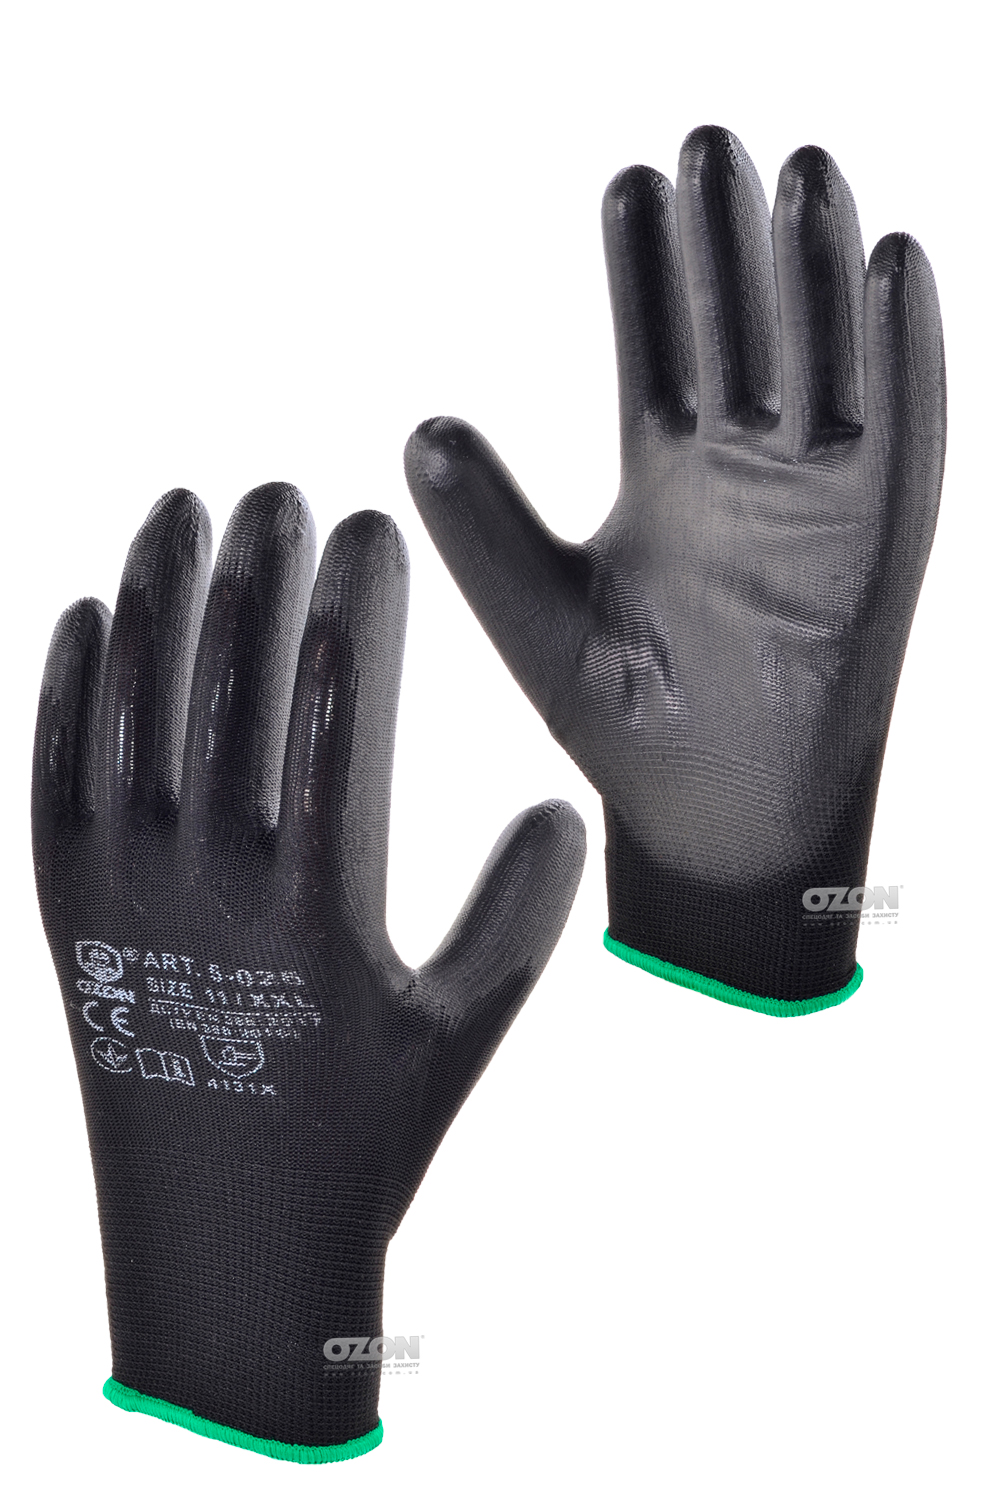 12 пар перчатки п/э с полиуретановым покрытием 5-026 - Фото 1